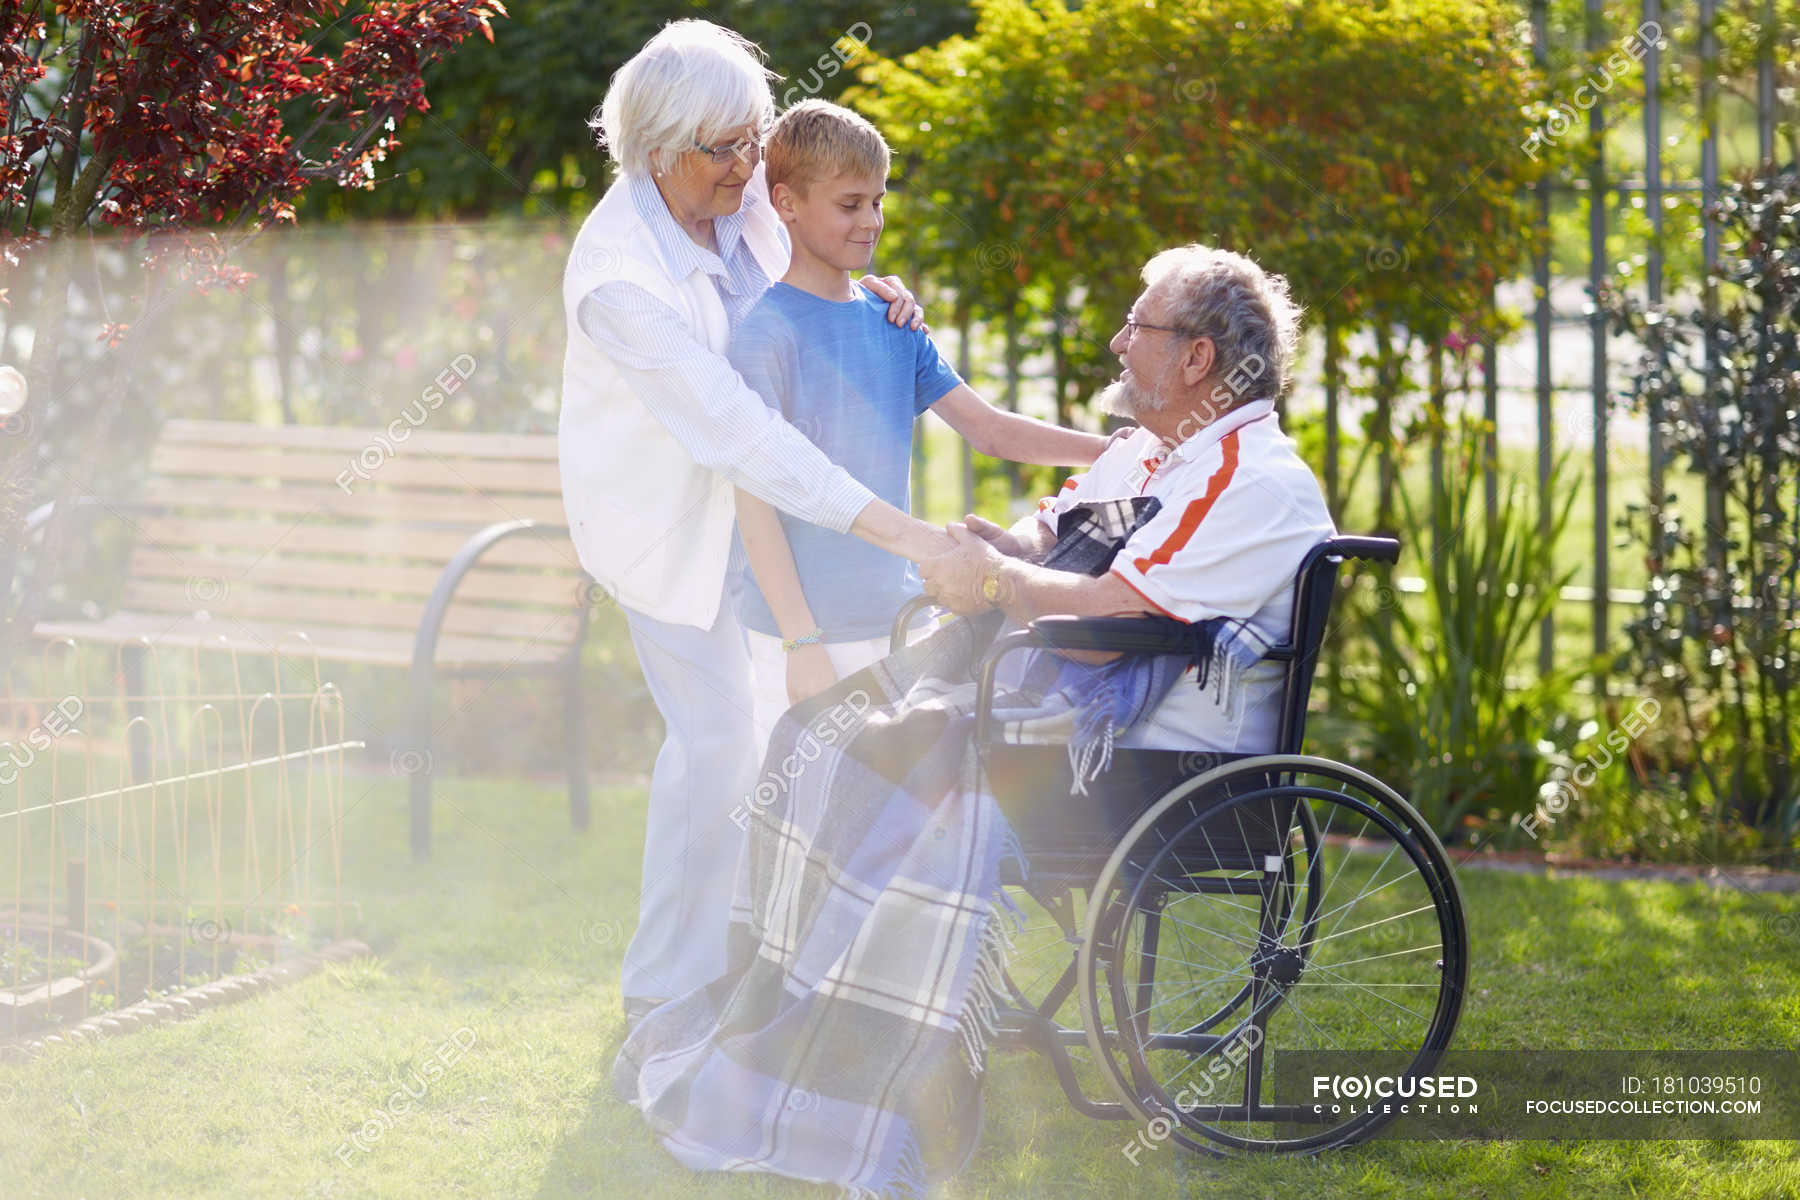 Бабушка и внук с дедушкой в инвалидной коляске на лужайке — Женский пол,Старшая женщина - Stock Photo